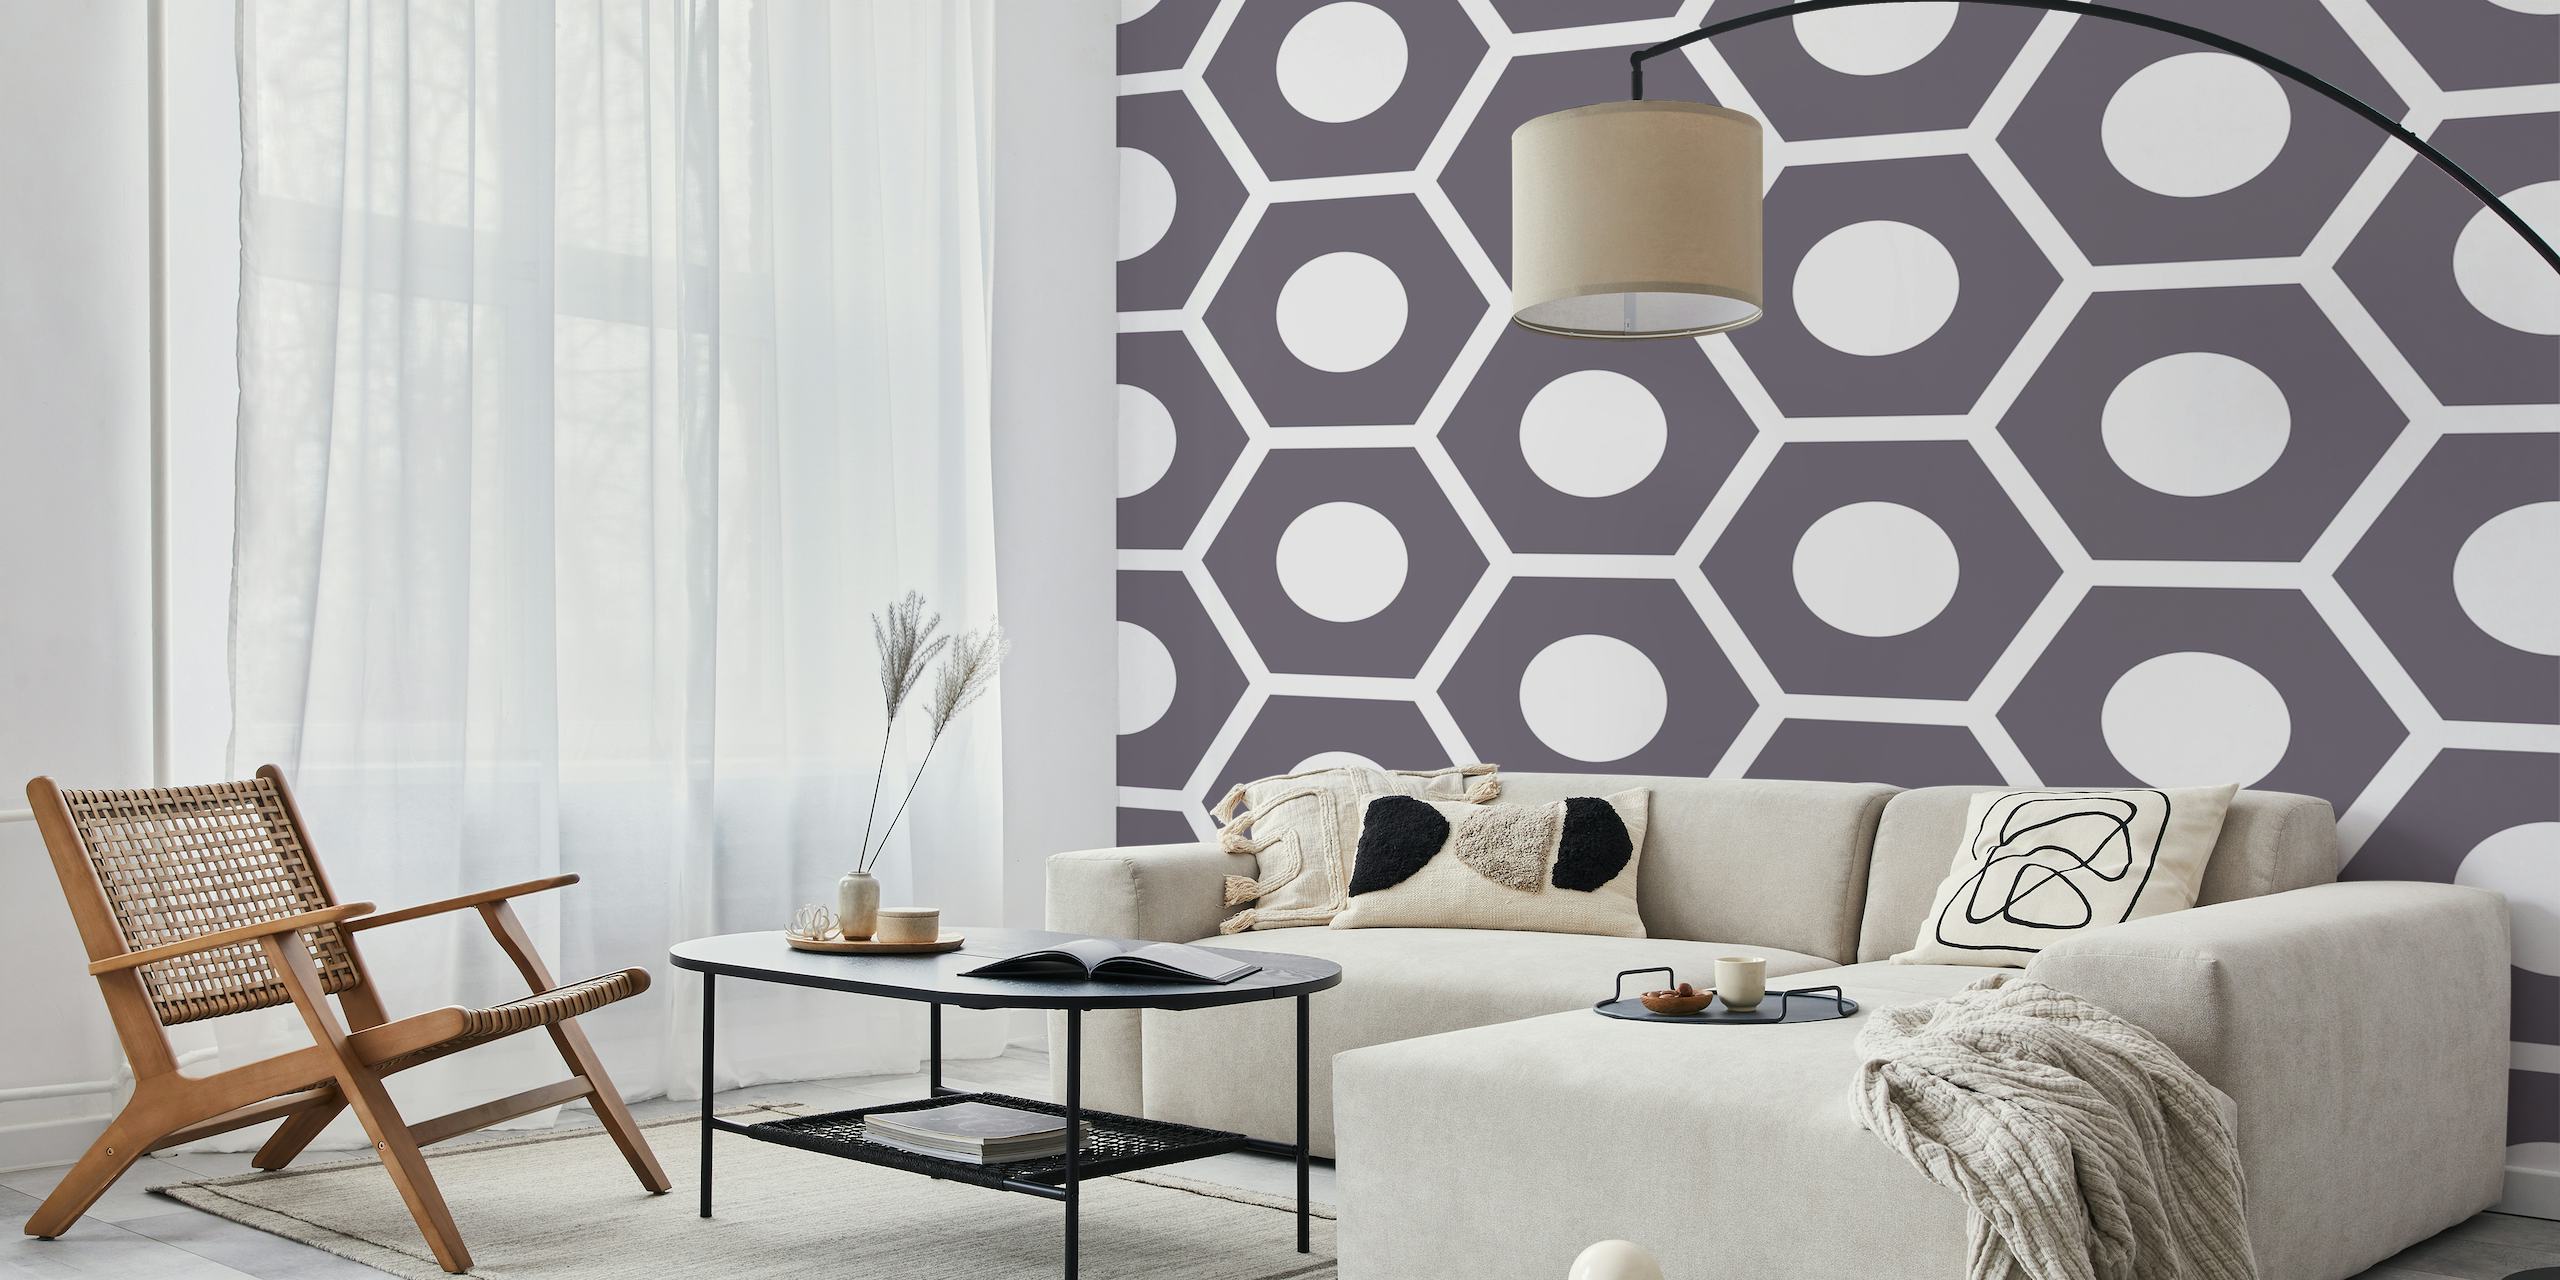 Fotomural vinílico de parede bicolor com padrão hexágono e desenho geométrico cinza e branco.